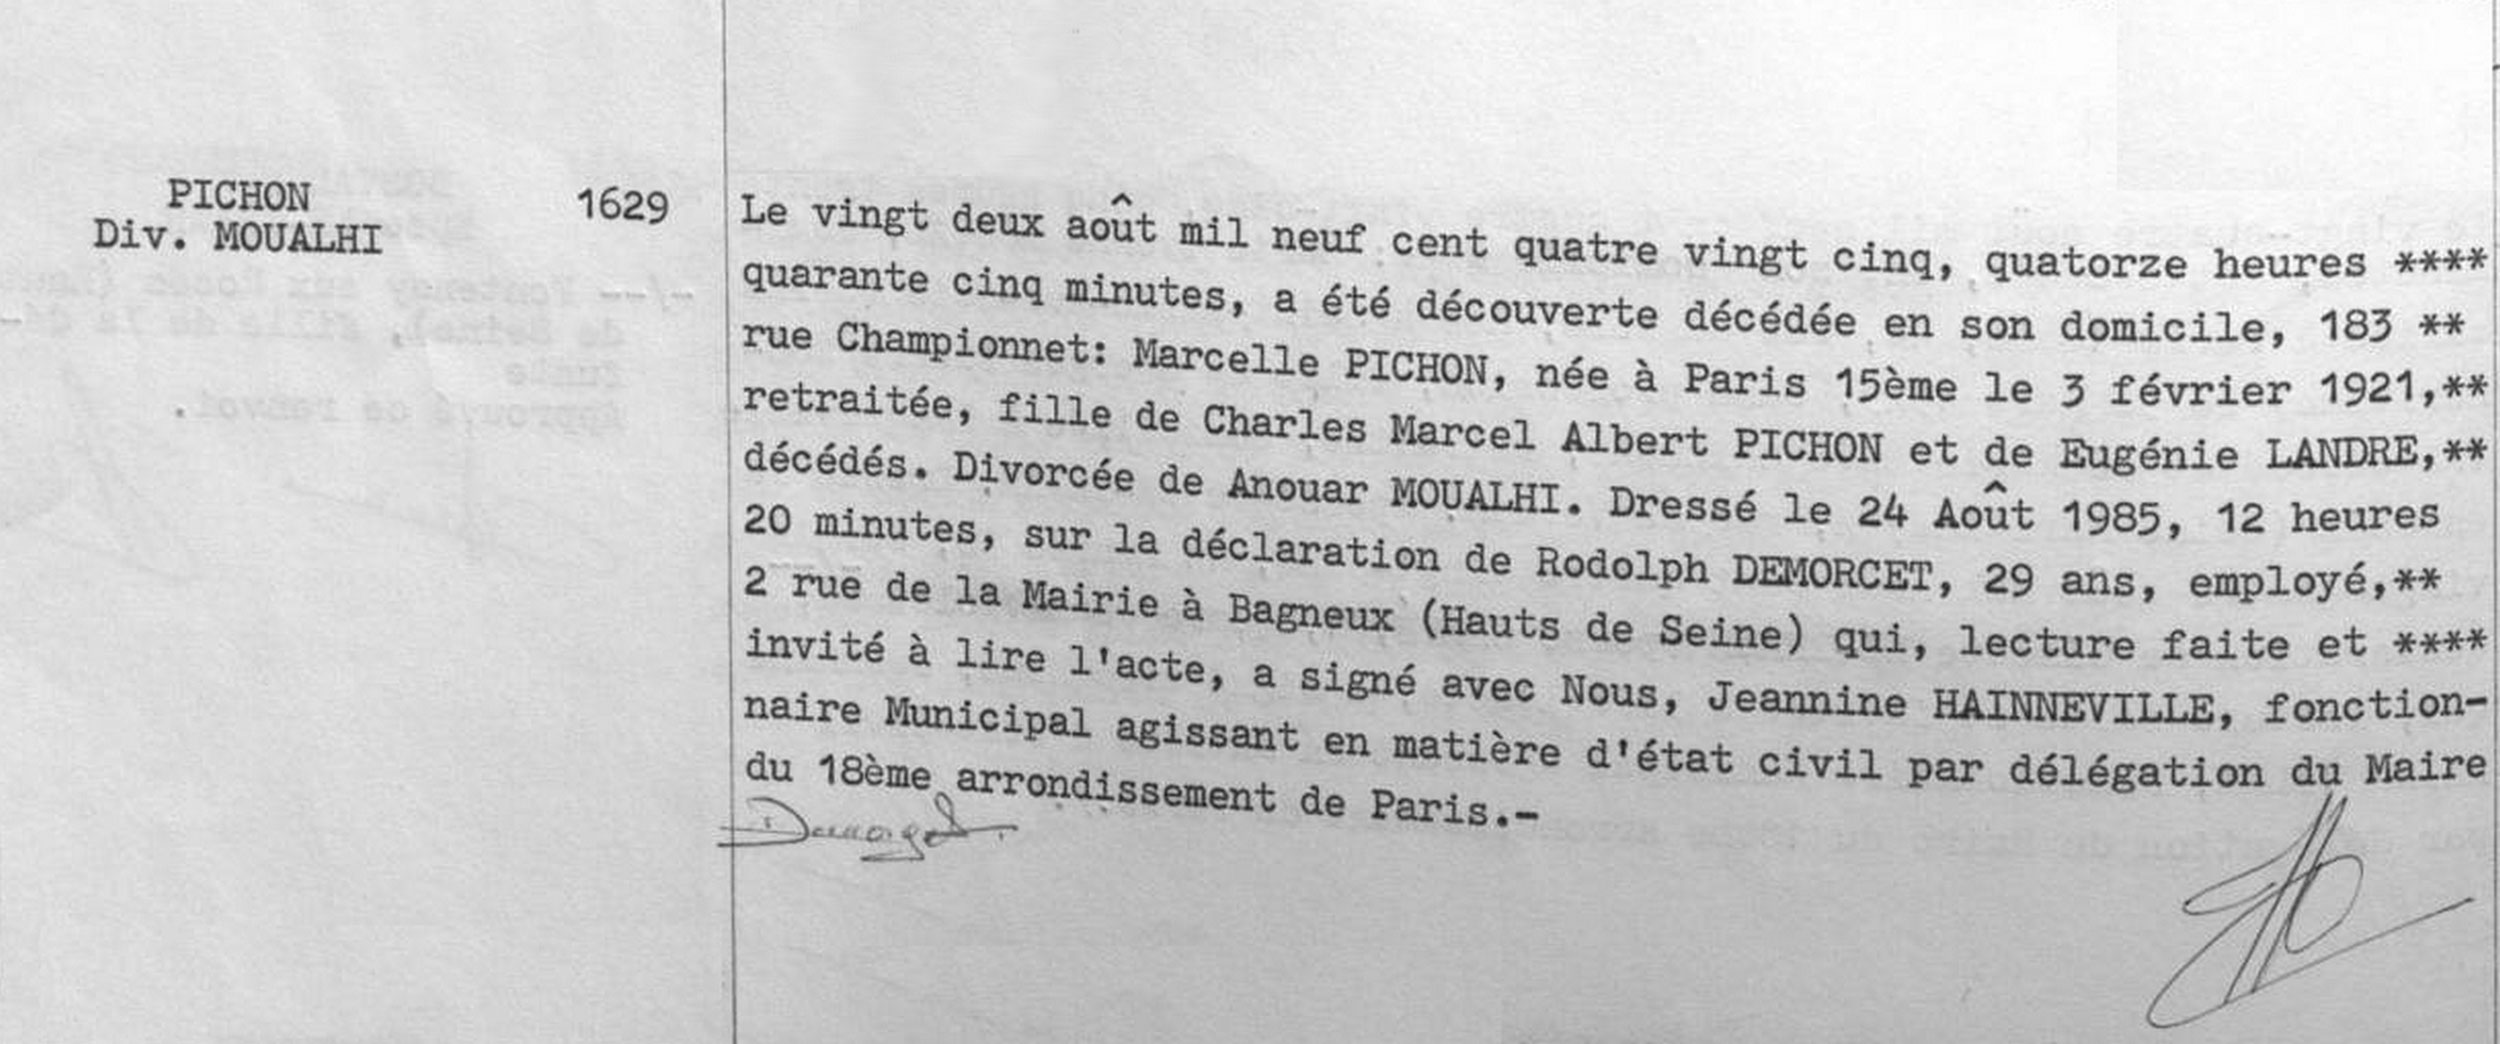 Acte de décès de Marcelle Pichon, 22 août 1985, mairie du 18e arrondissement de Paris. Le fait qu’elle soit décédée dix mois plus tôt n’est pas mentionné…<br><br>